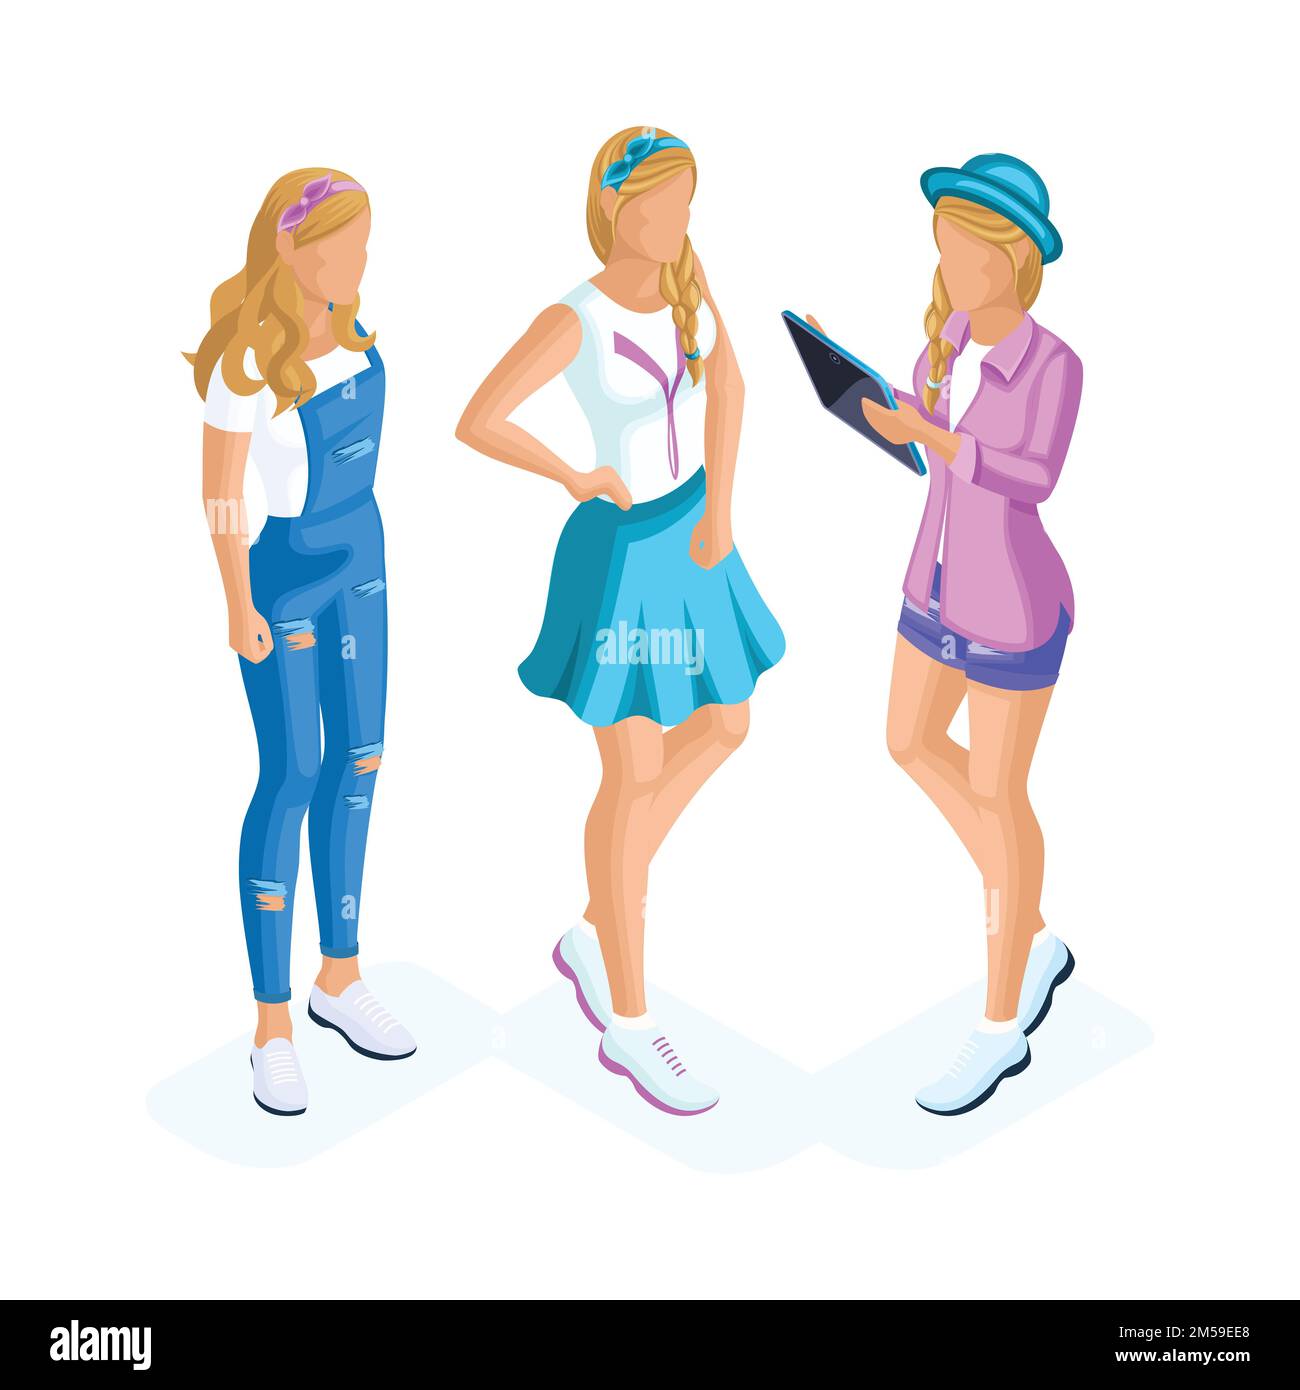 Isometrics delle ragazze adolescenti, generazione Z con i gadgets, vestiti eleganti, acconciatura fredda, cappello, accessori, girlfriends fin dall'infanzia. Illustrazione Vettoriale